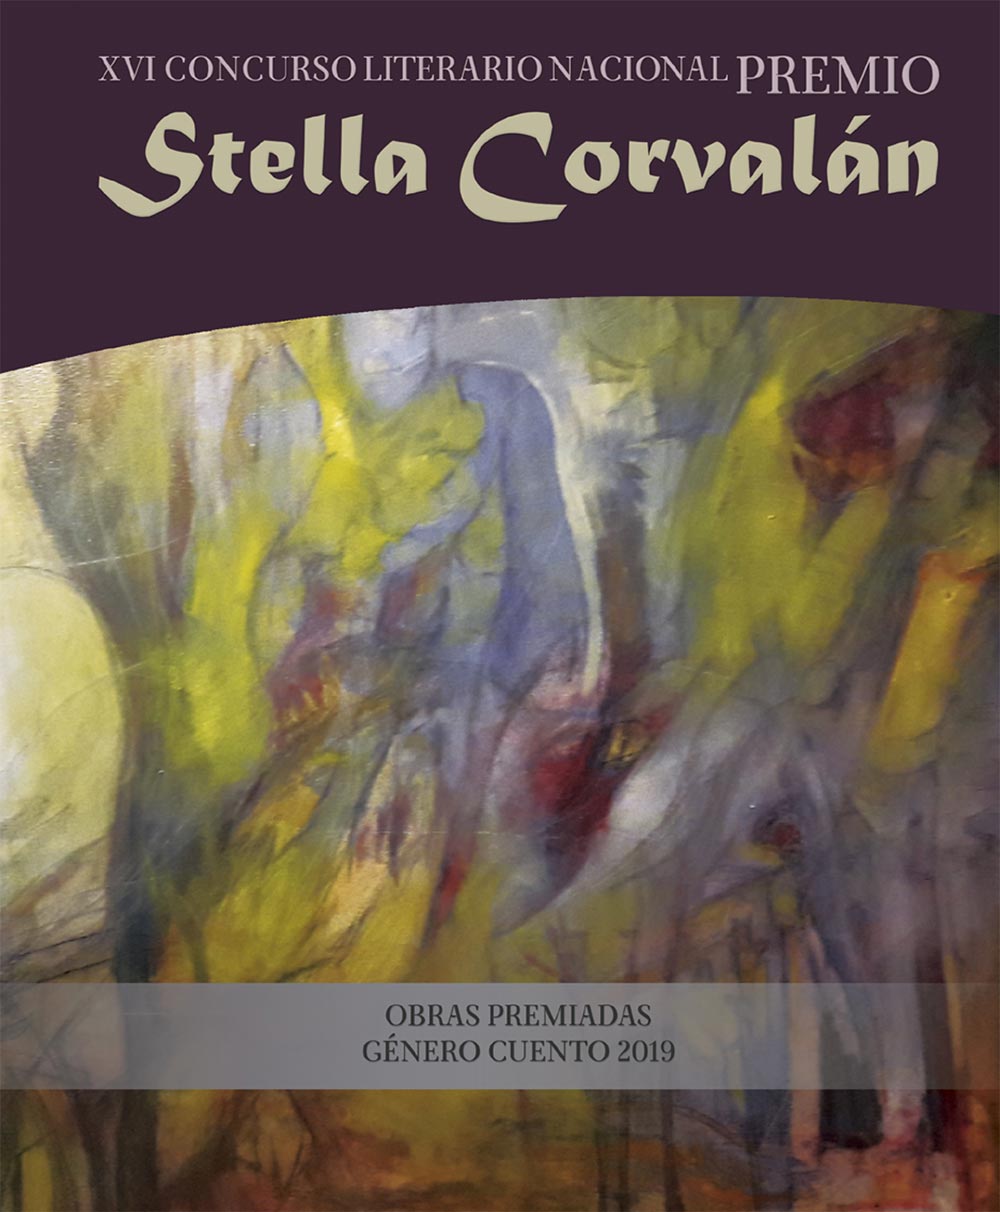 Premio Stella Corvalán, CUENTO, 2020